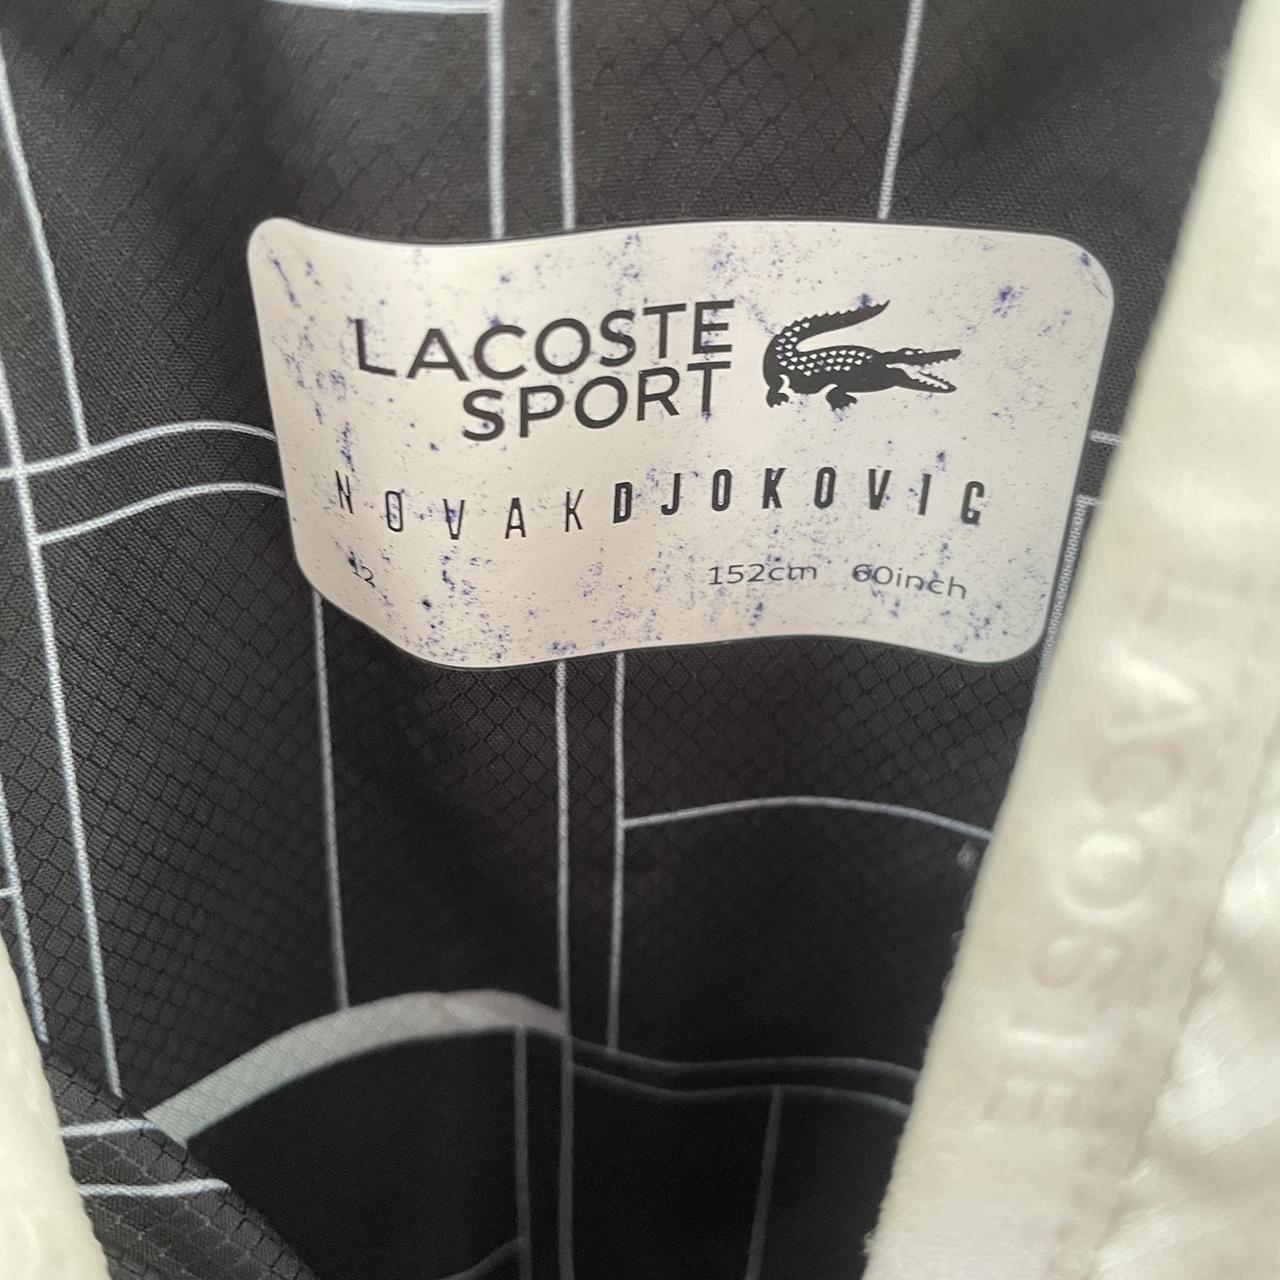 12 year olds boys Lacoste Novak Djokovic tracksuit - Depop